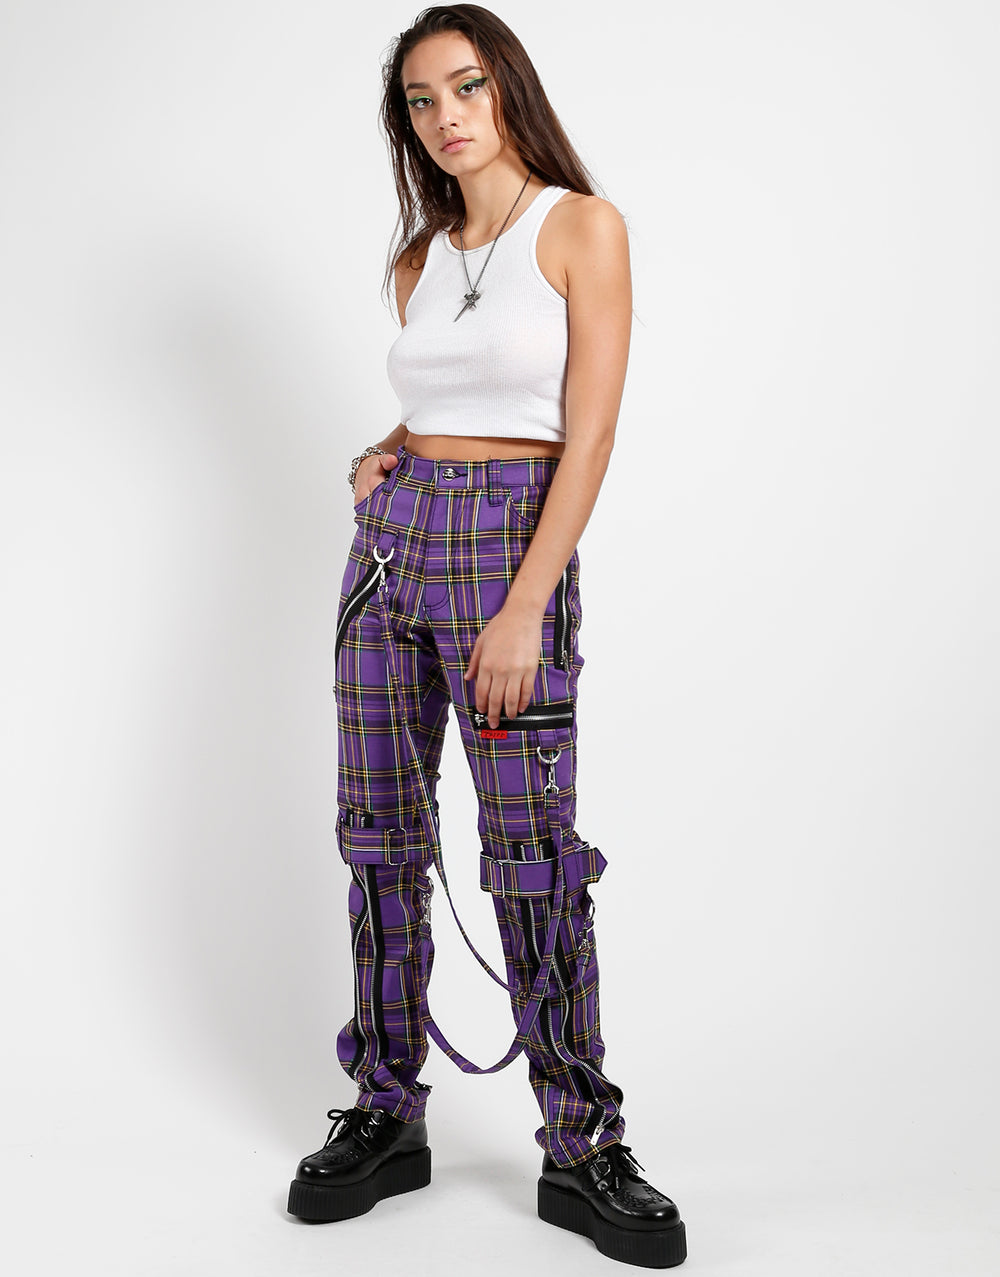 Grey/Purple Plaid Pants - JBD Clothiers